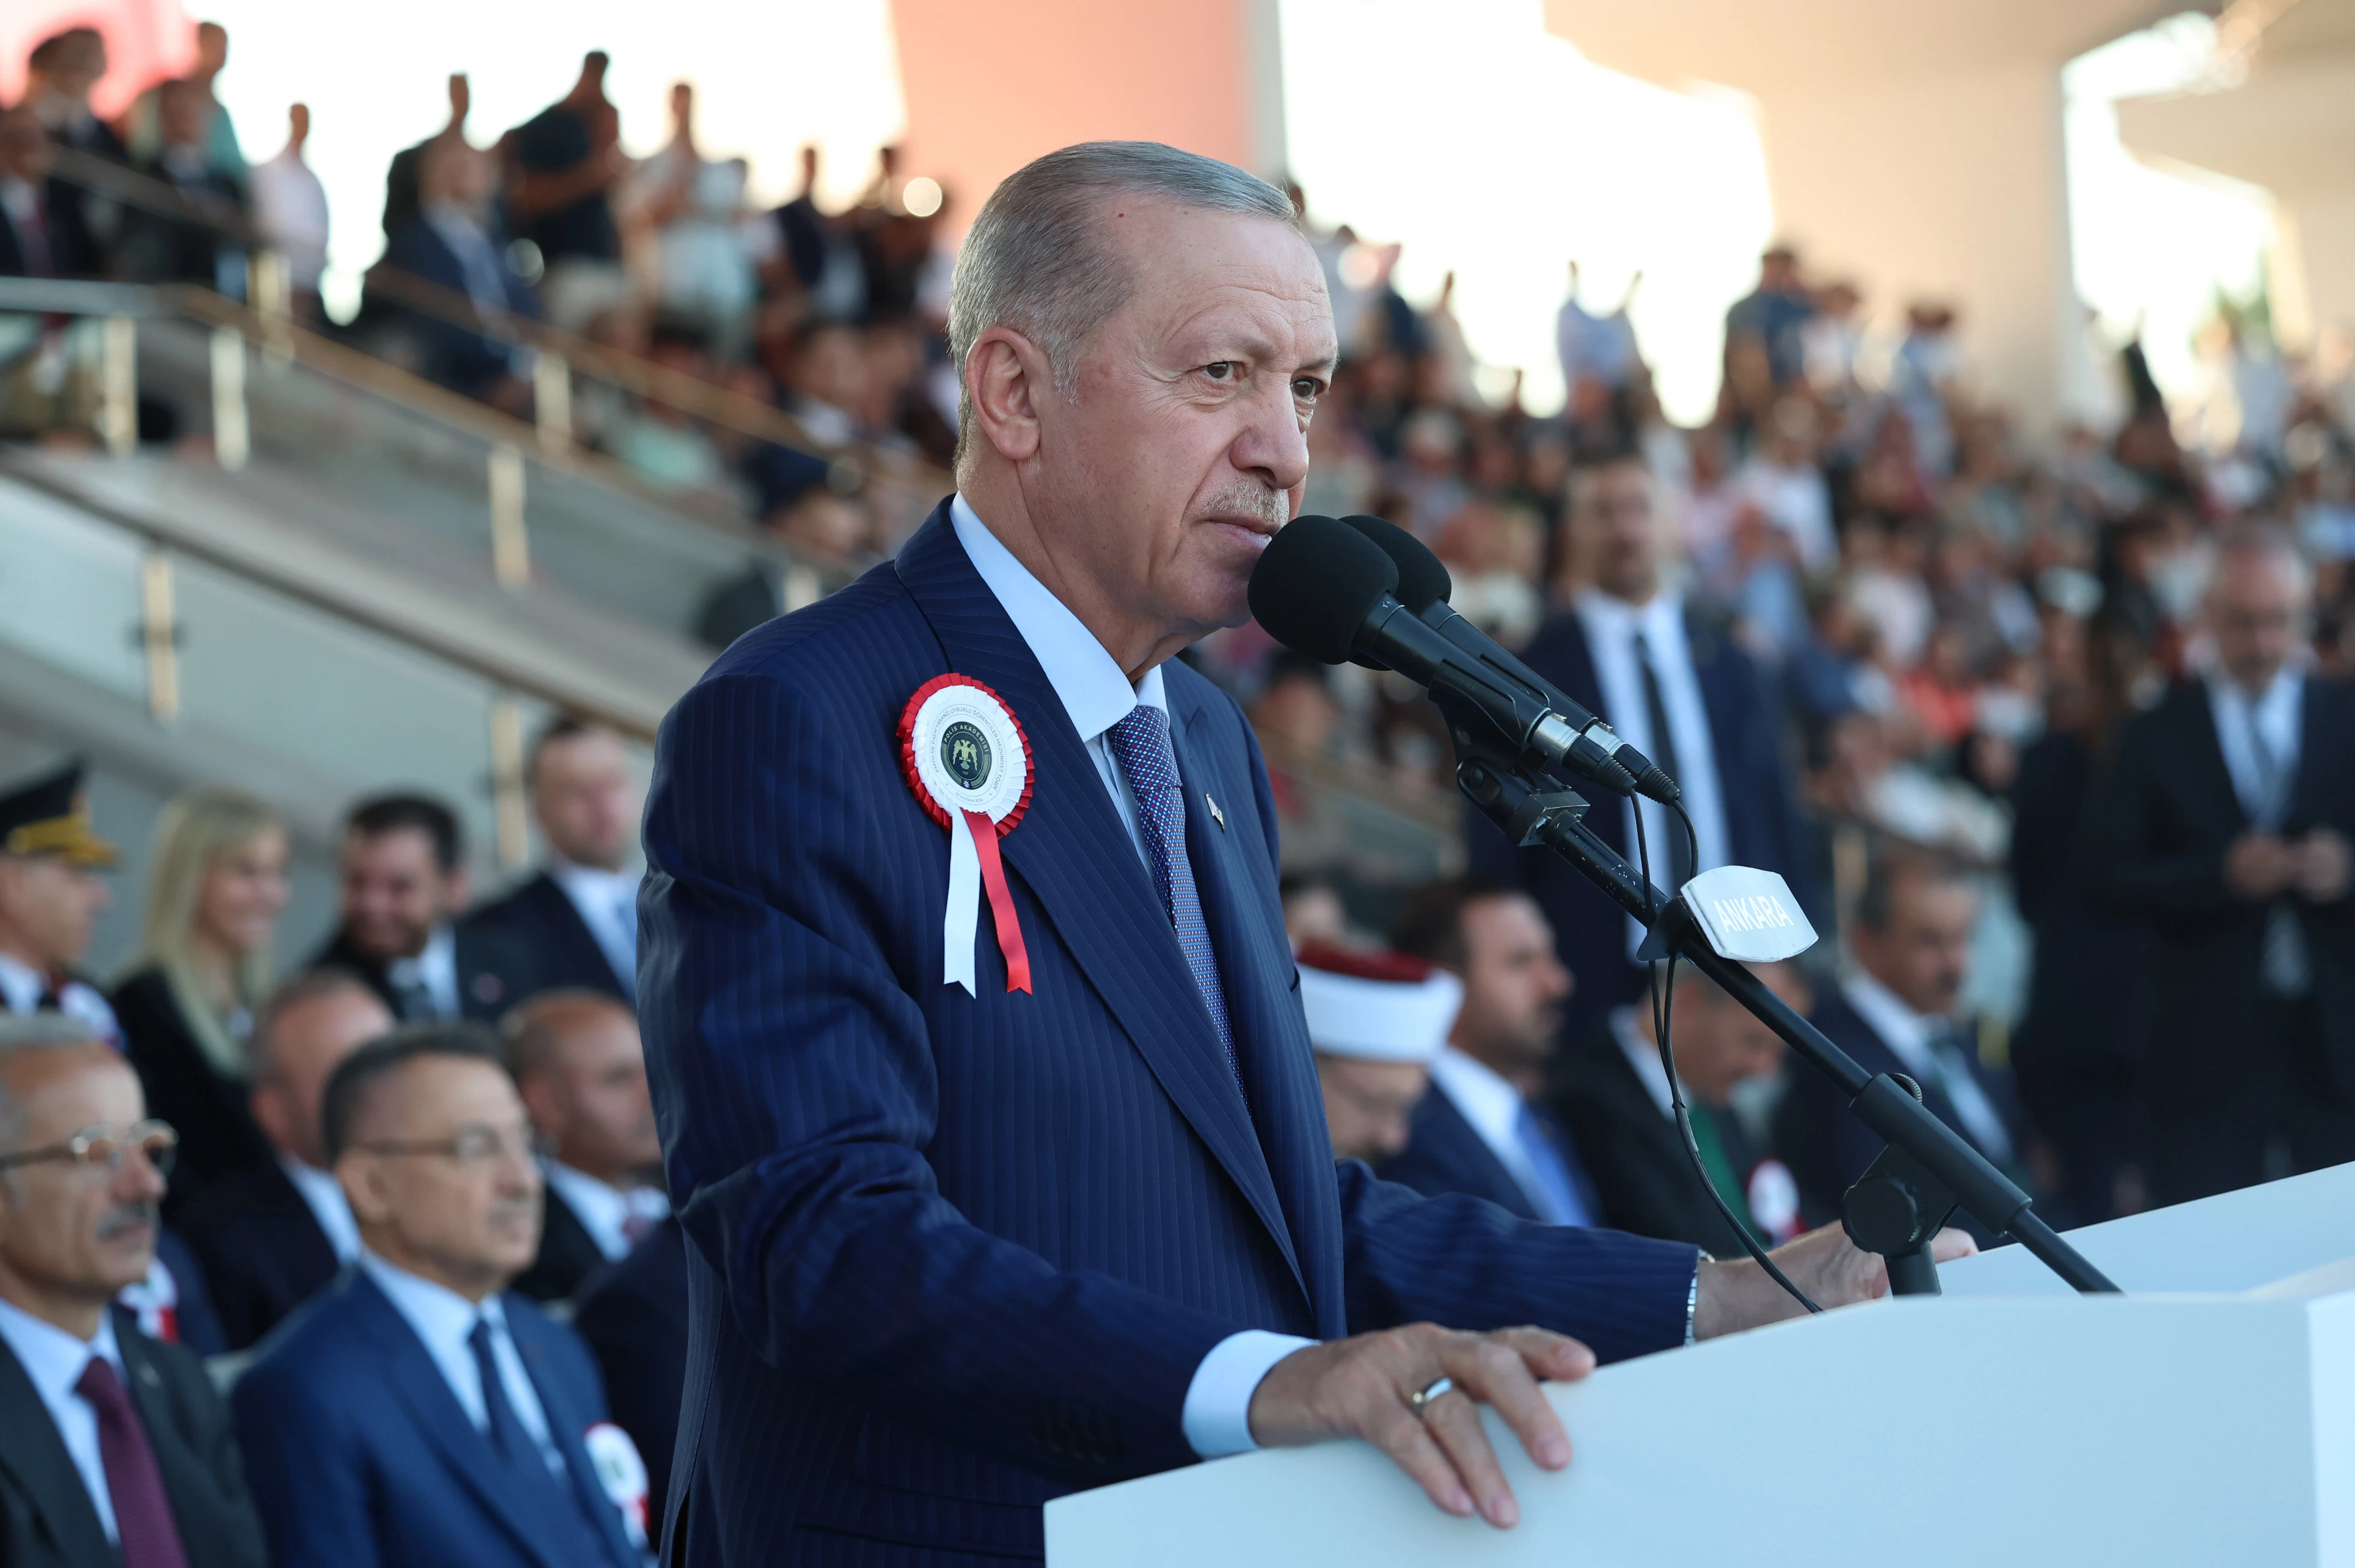 Cumhurbaşkanı Erdoğan'dan net mesaj: "Vatandaşın güvenliği her şeyden önemli!"